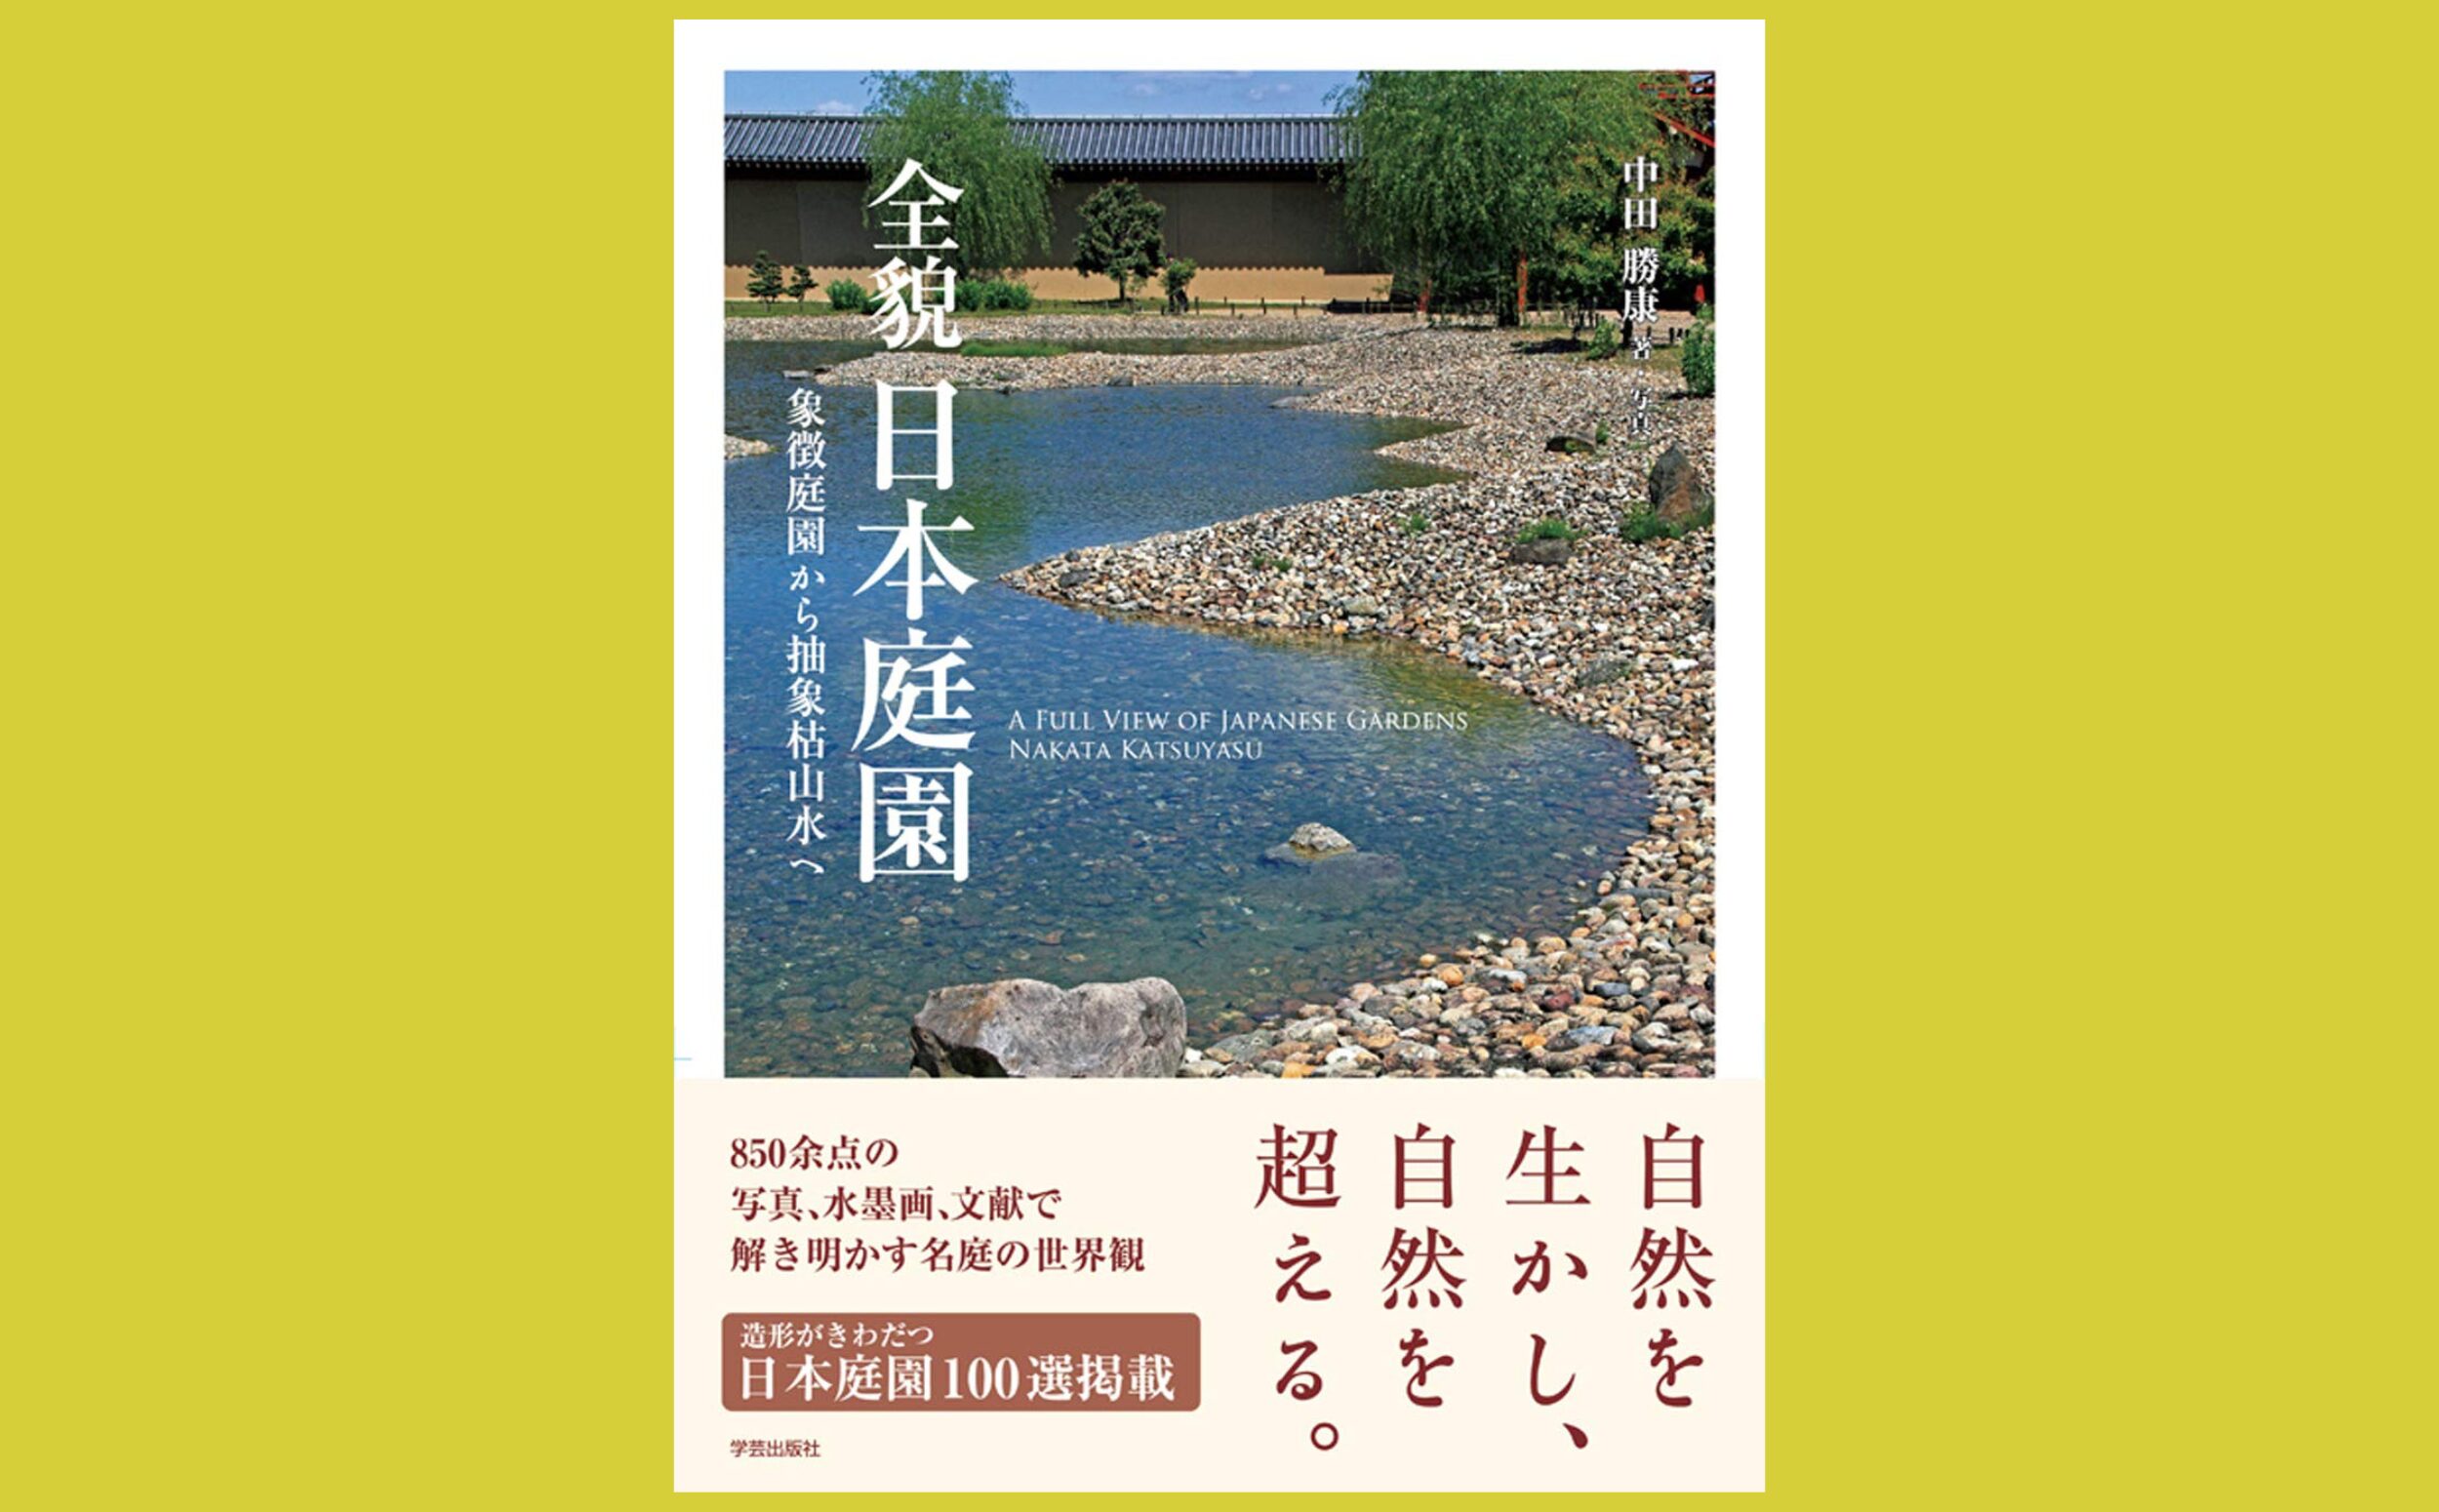 850点余の写真で描く名庭園の思想と世界『全貌 日本庭園』